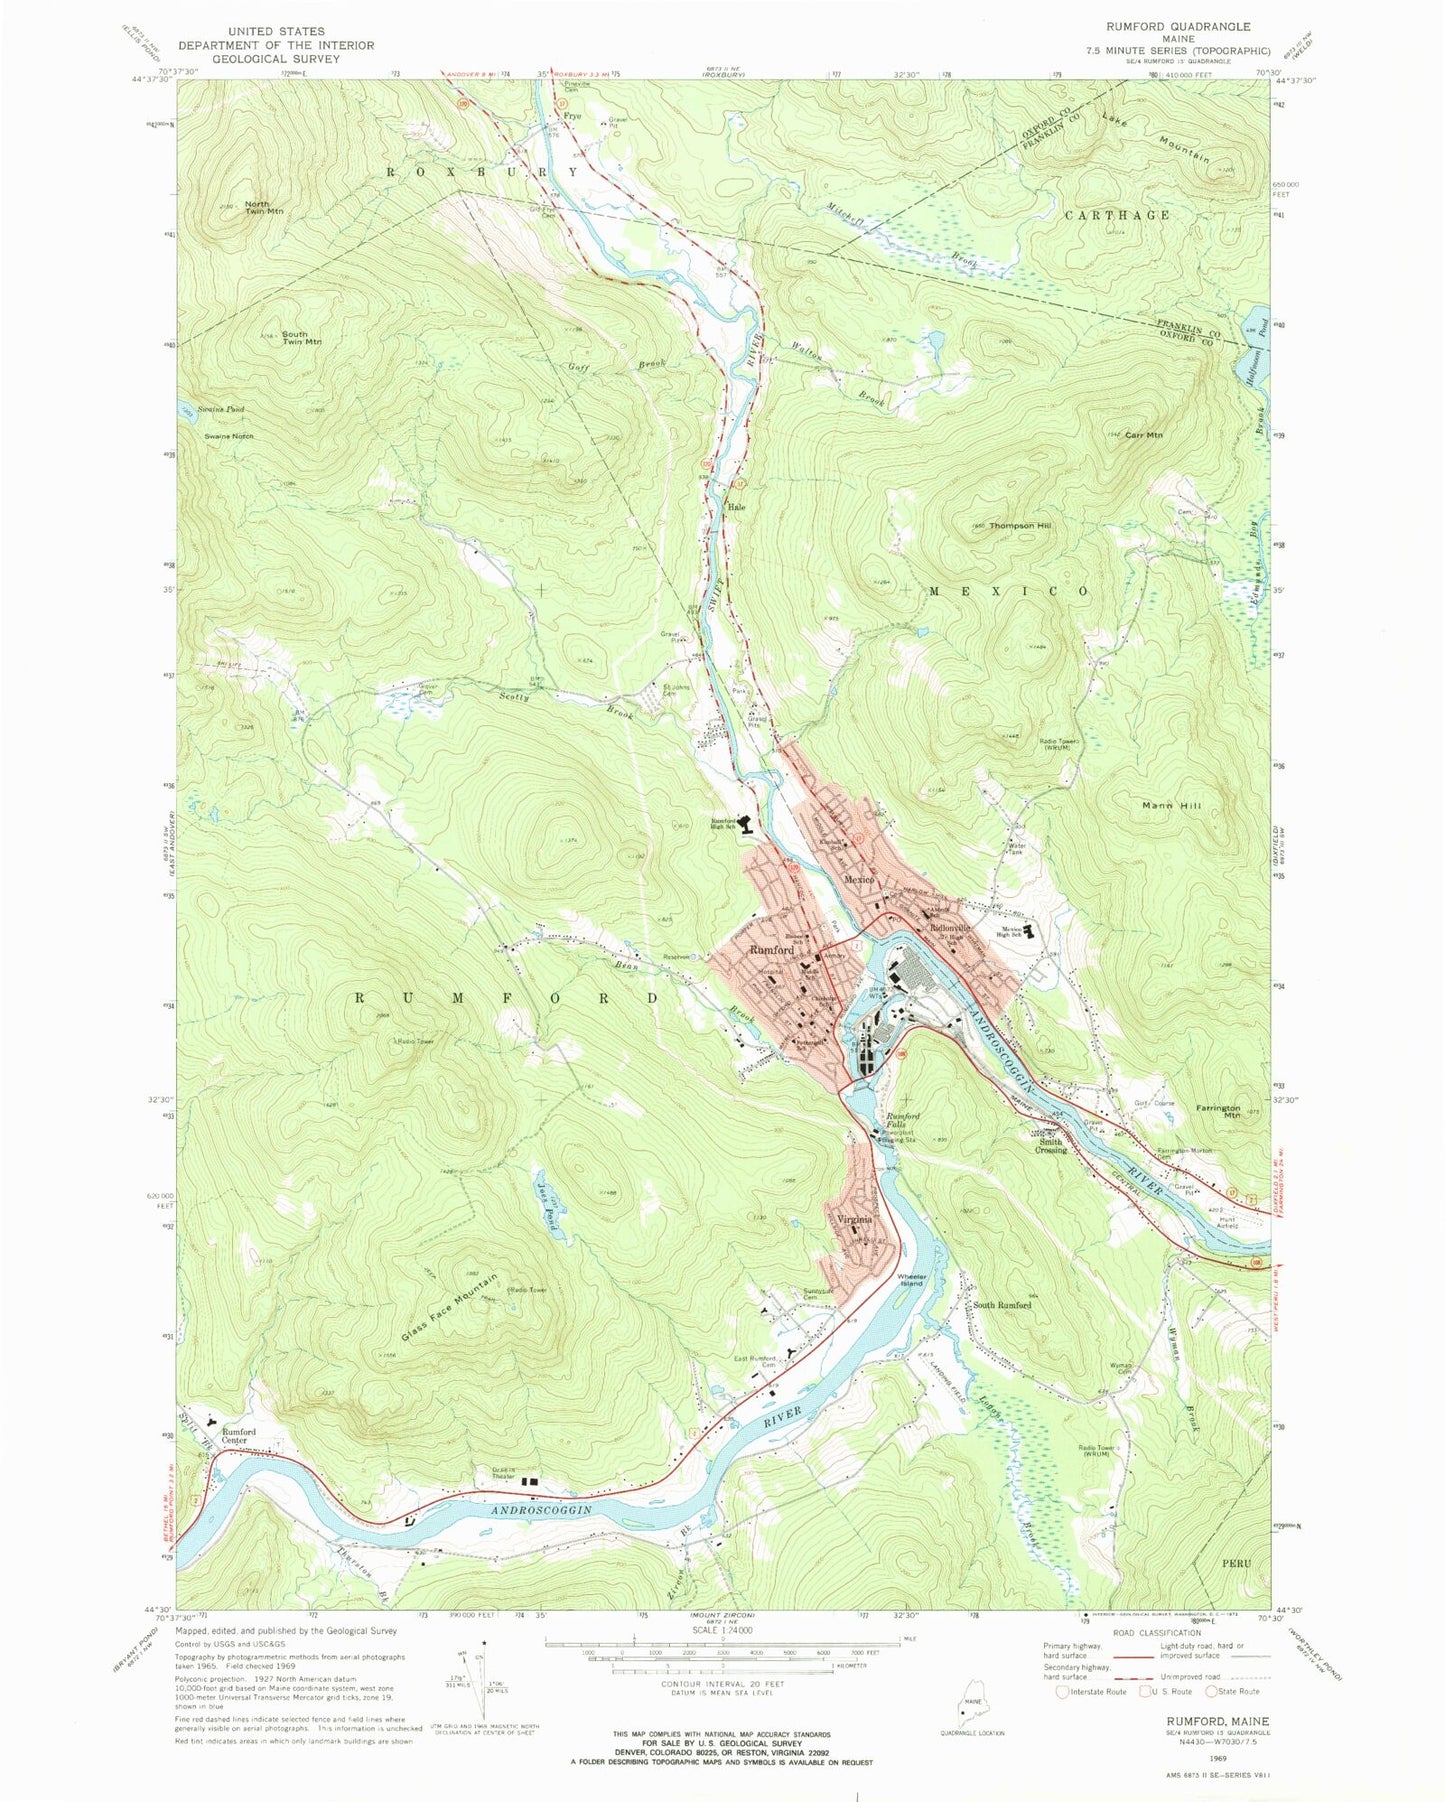 Classic USGS Rumford Maine 7.5'x7.5' Topo Map Image